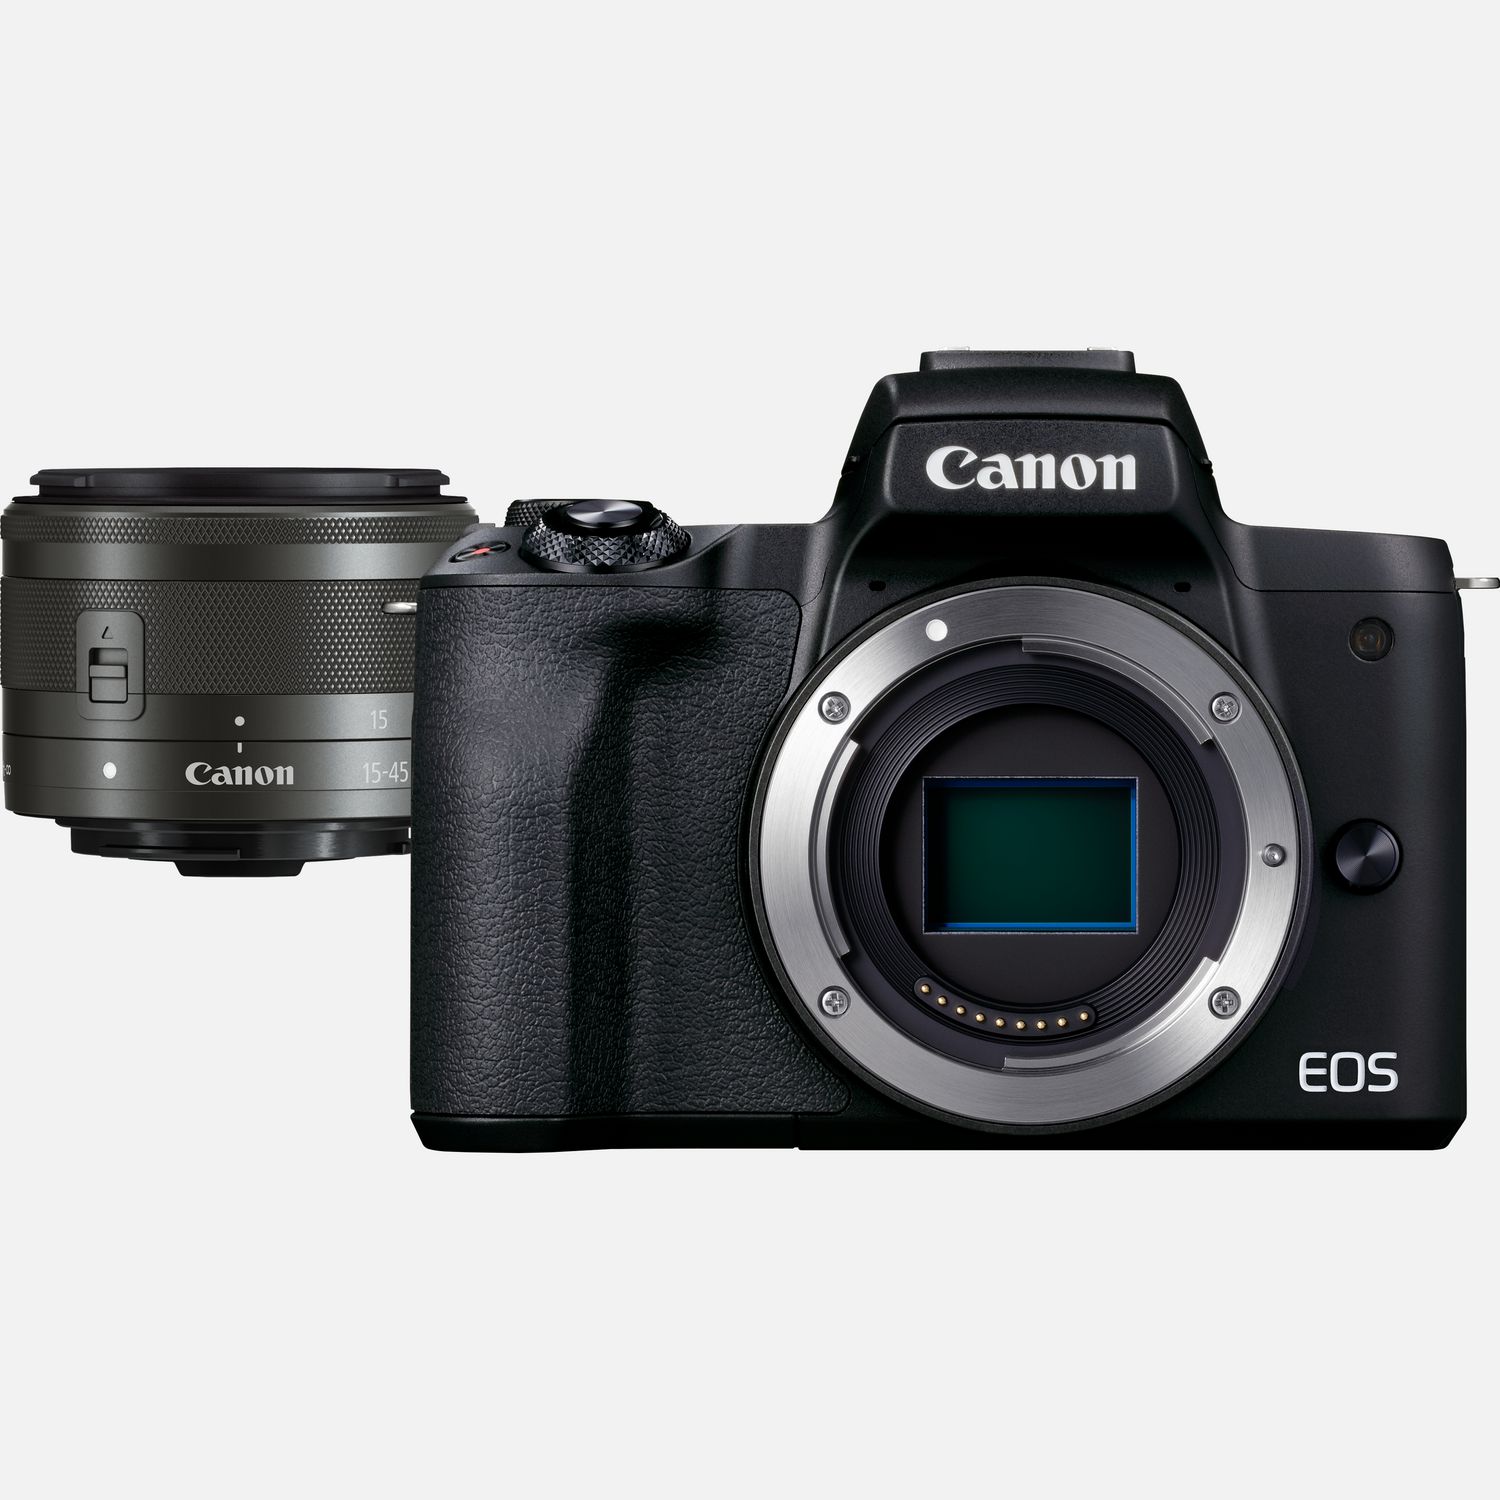 Image of Fotocamera mirrorless Canon EOS M50 Mark II, Nero + obiettivo EF-M 15-45mm f/3.5-6.3 IS STM, Grafite